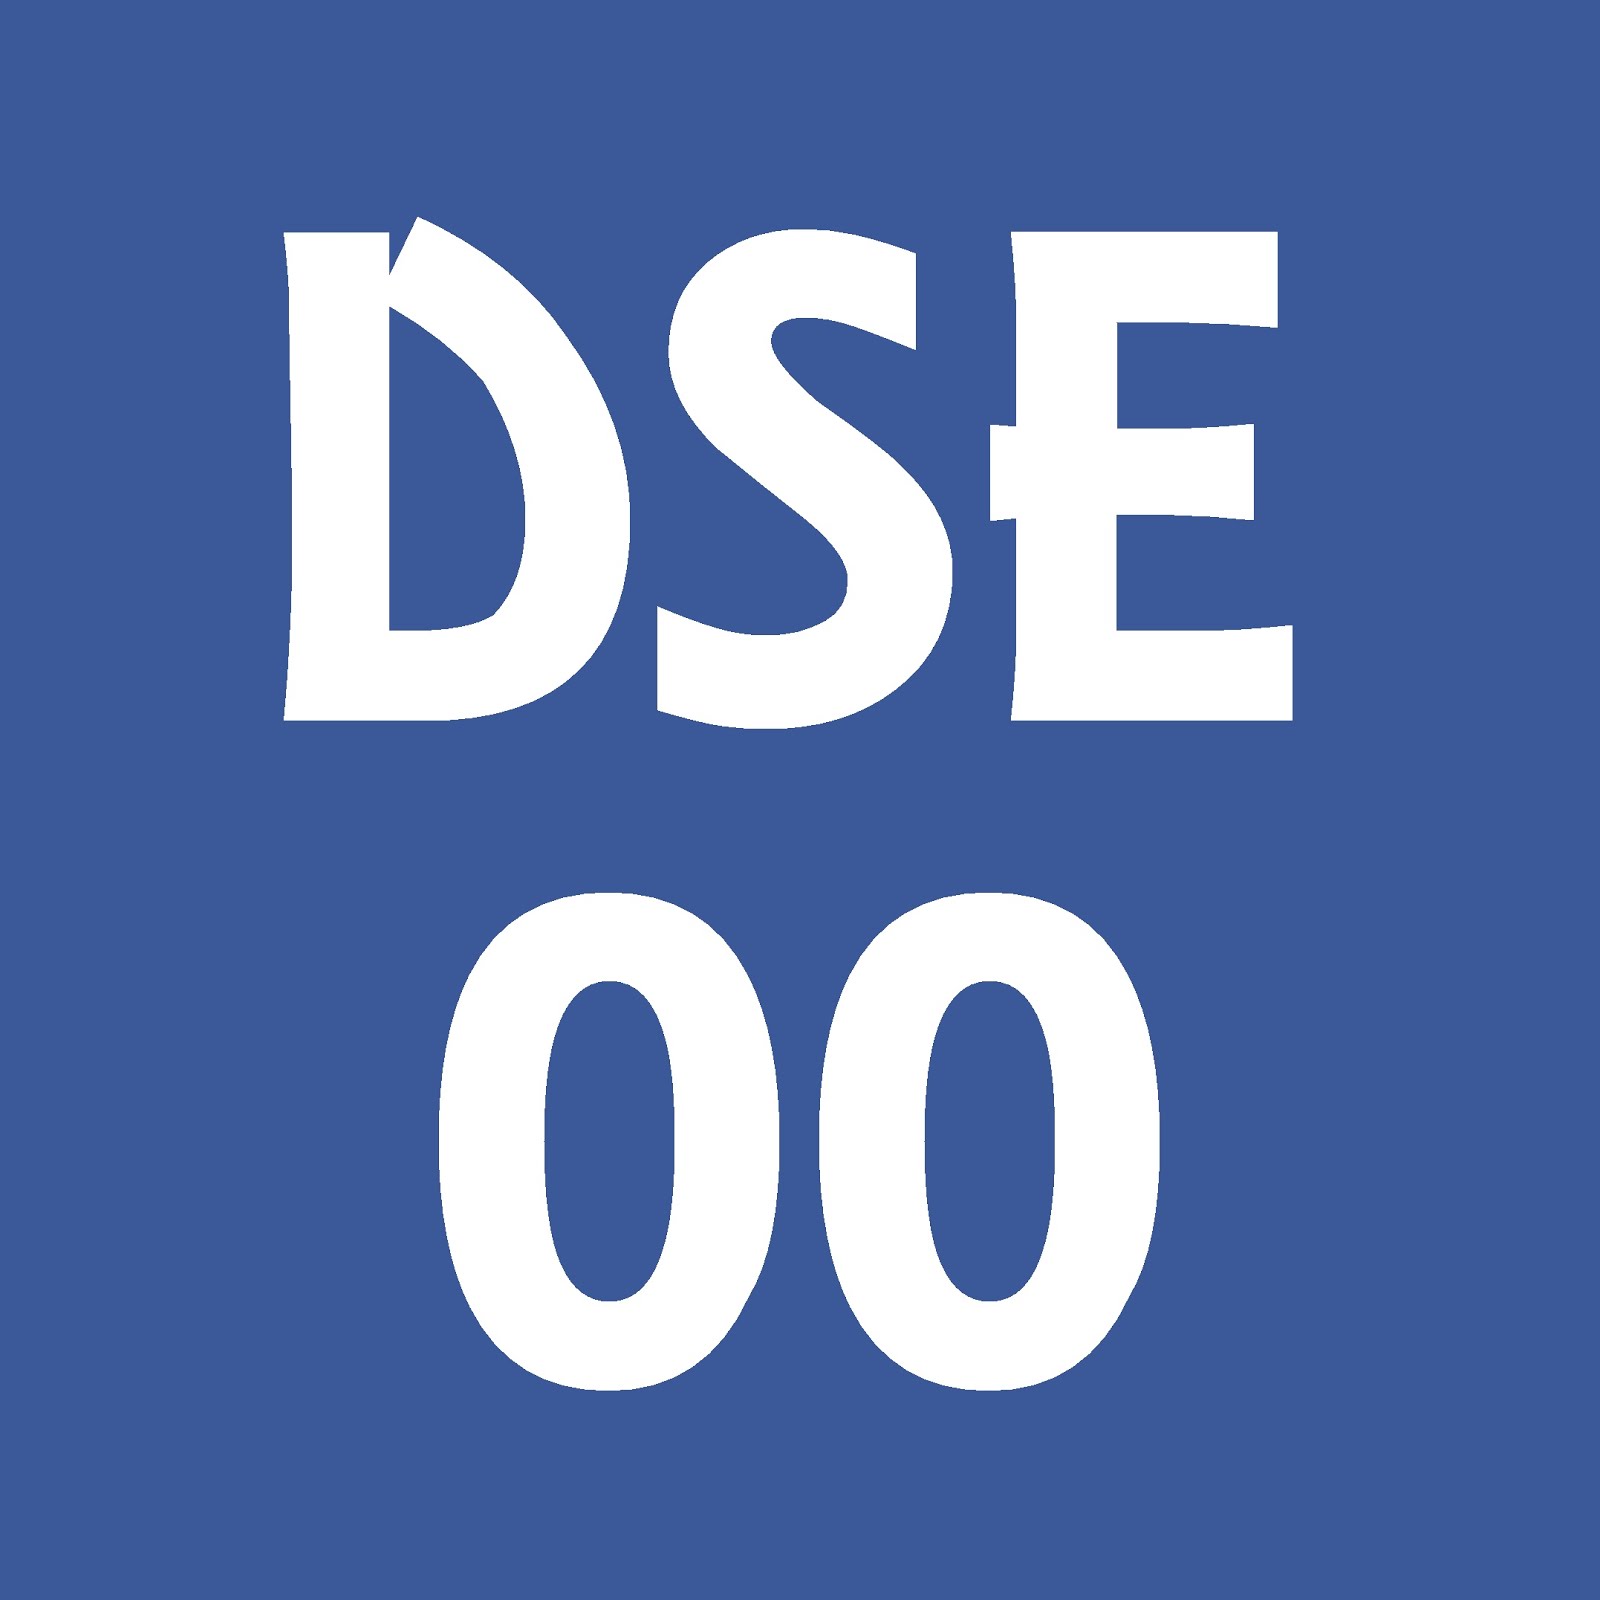 DSE00資源區